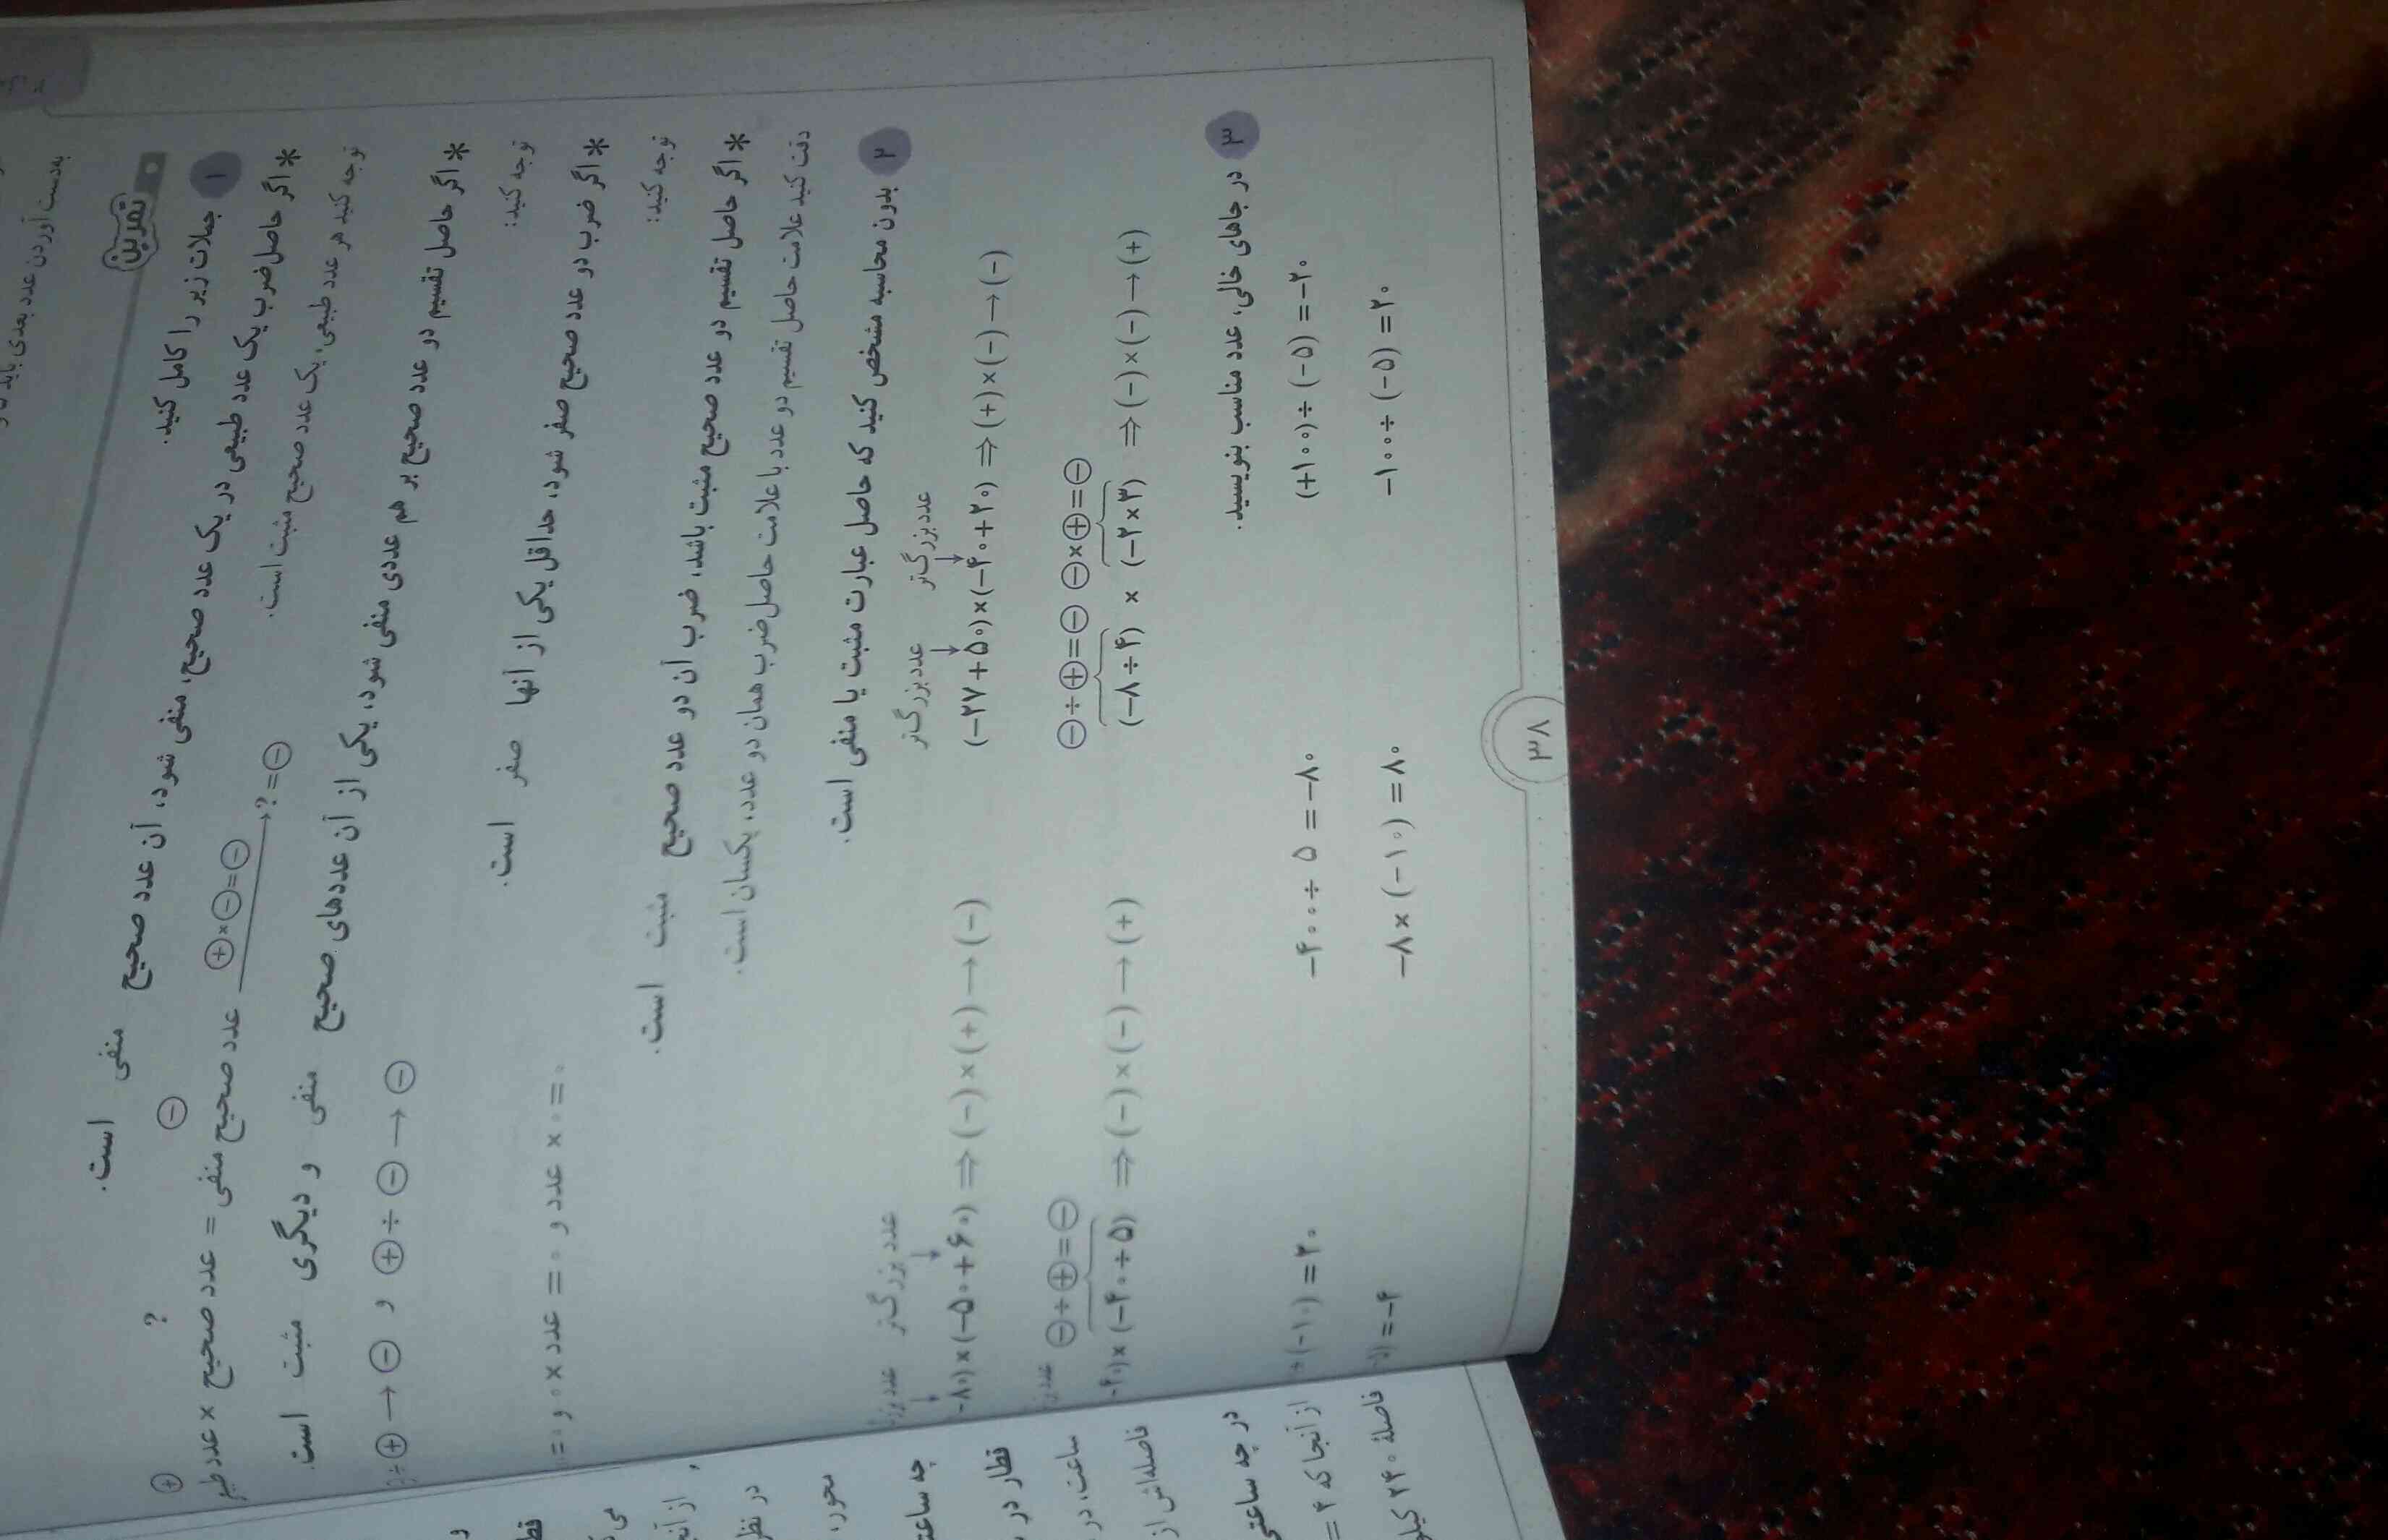 ادامه صفحه ۲۵ سوالات ۱تا ۳